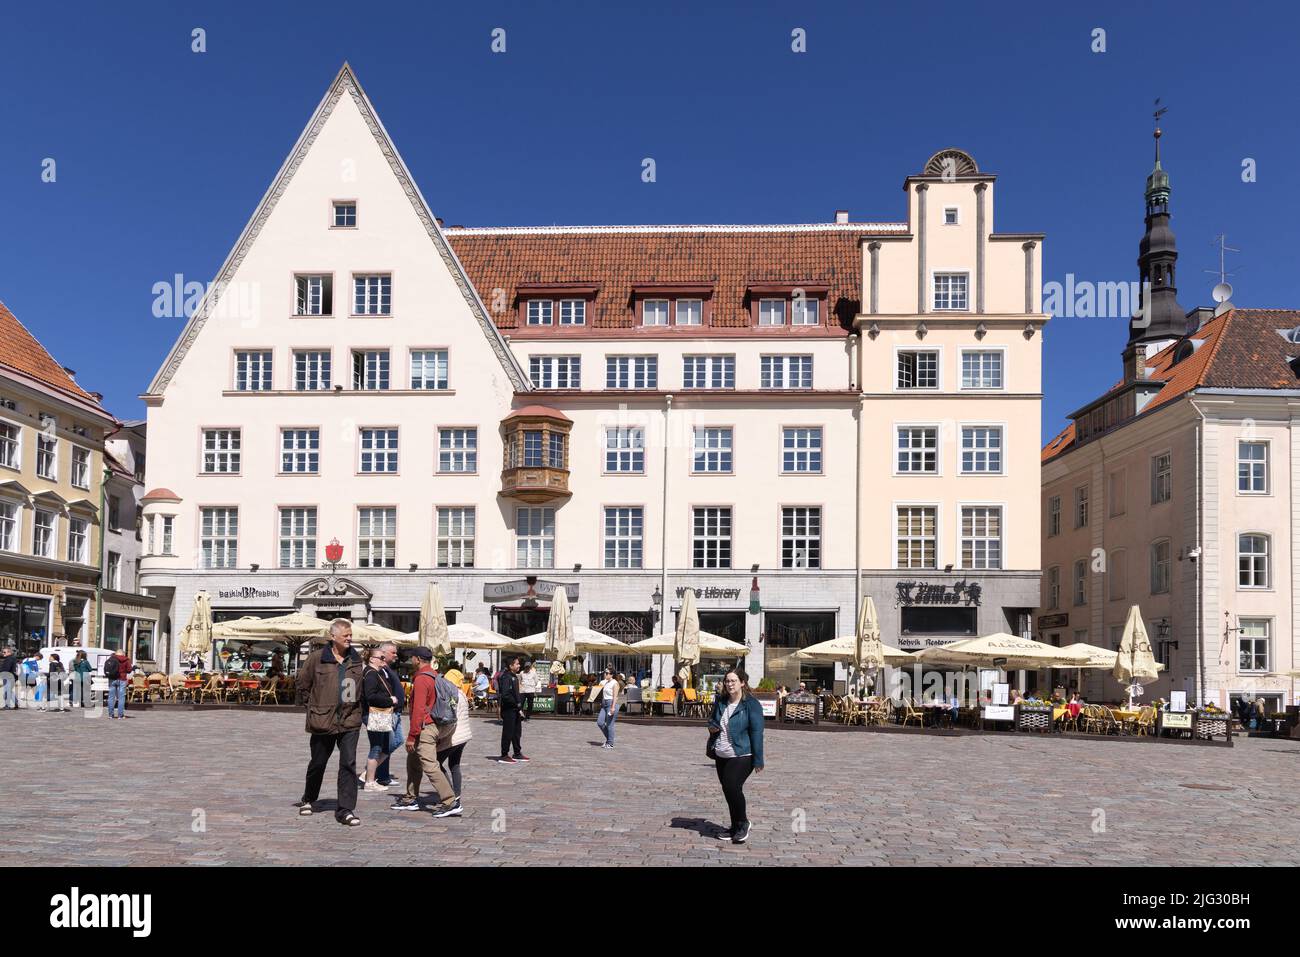 Menschen in Tallinn Altstadtplatz Estland - mittelalterliche Gebäude aus dem 14.. Jahrhundert, die den alten Rathausplatz im Sommer umgeben; Tallinn, Estland Europa Stockfoto